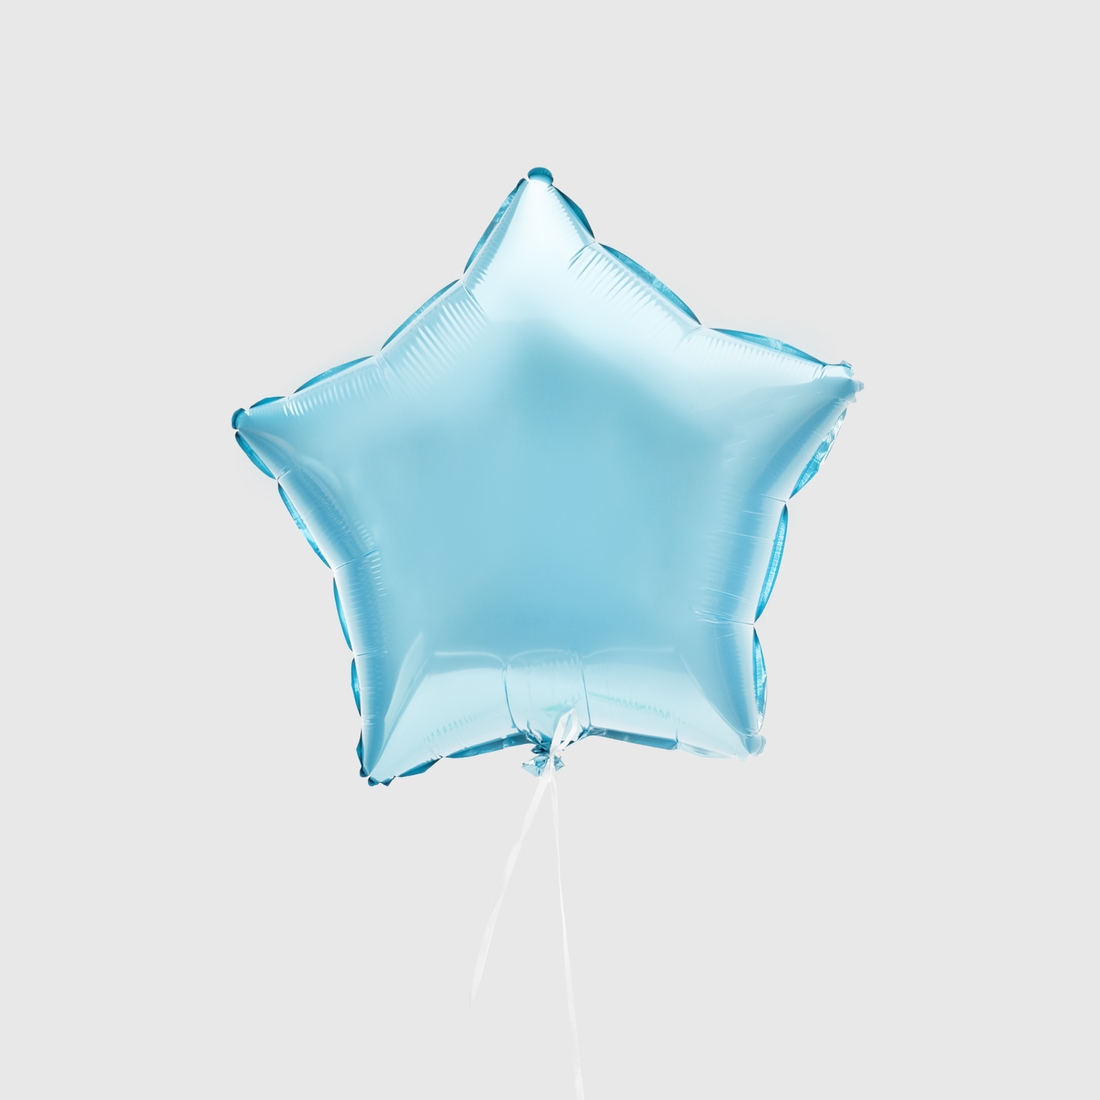 Фото Набор воздушных шариков "Boy" GS52711 Разноцветный (2000990241672)